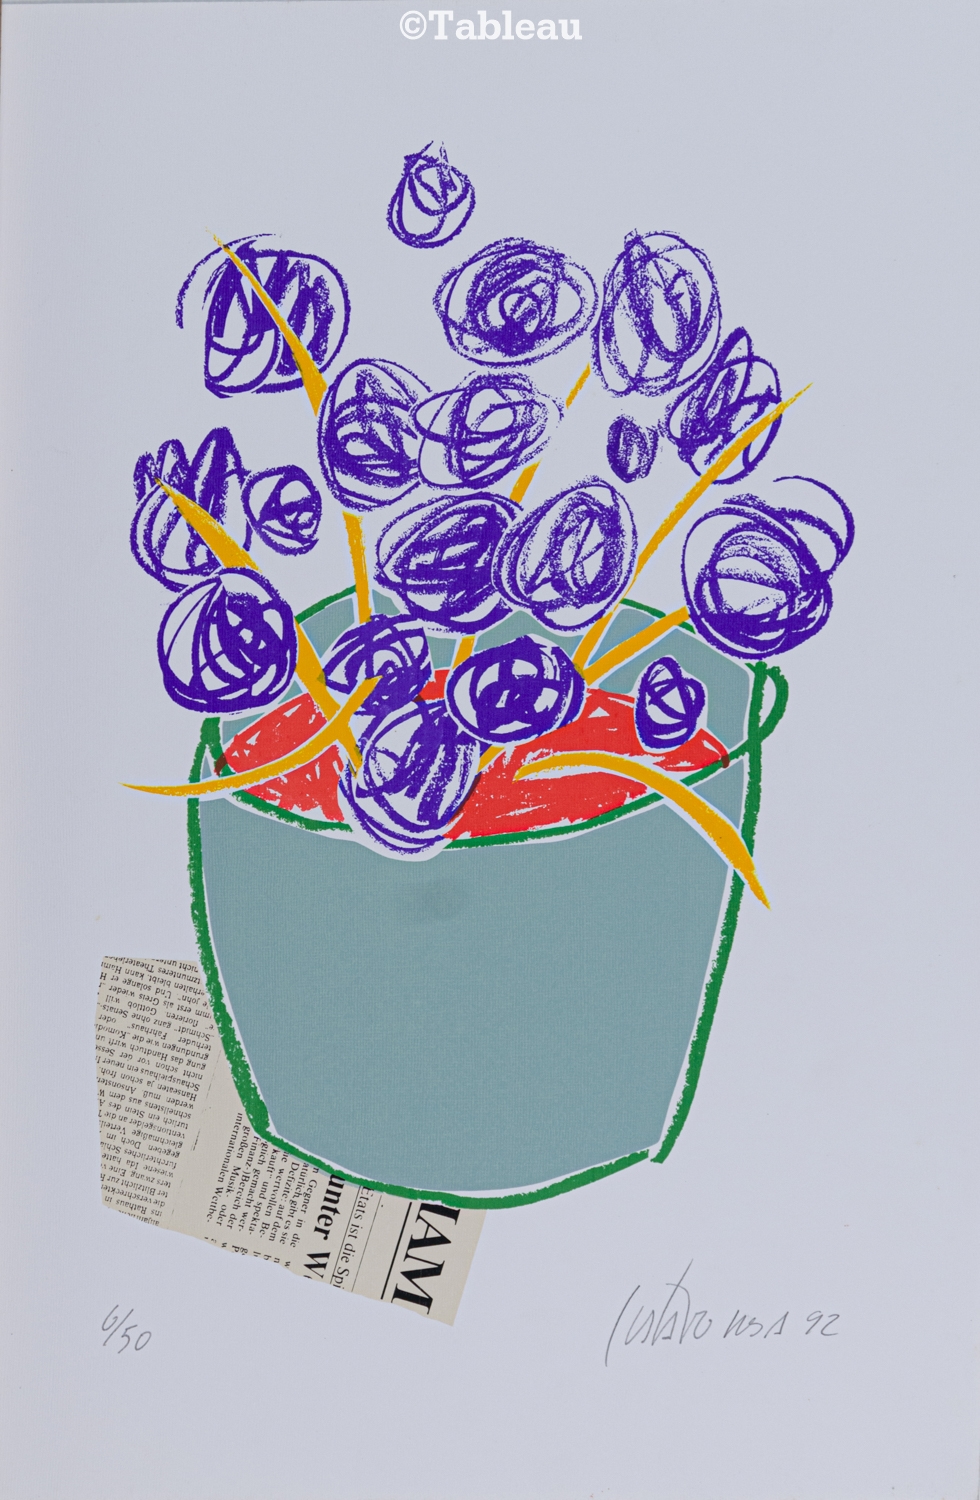 Vaso de flores by Gustavo Rosa, 1992